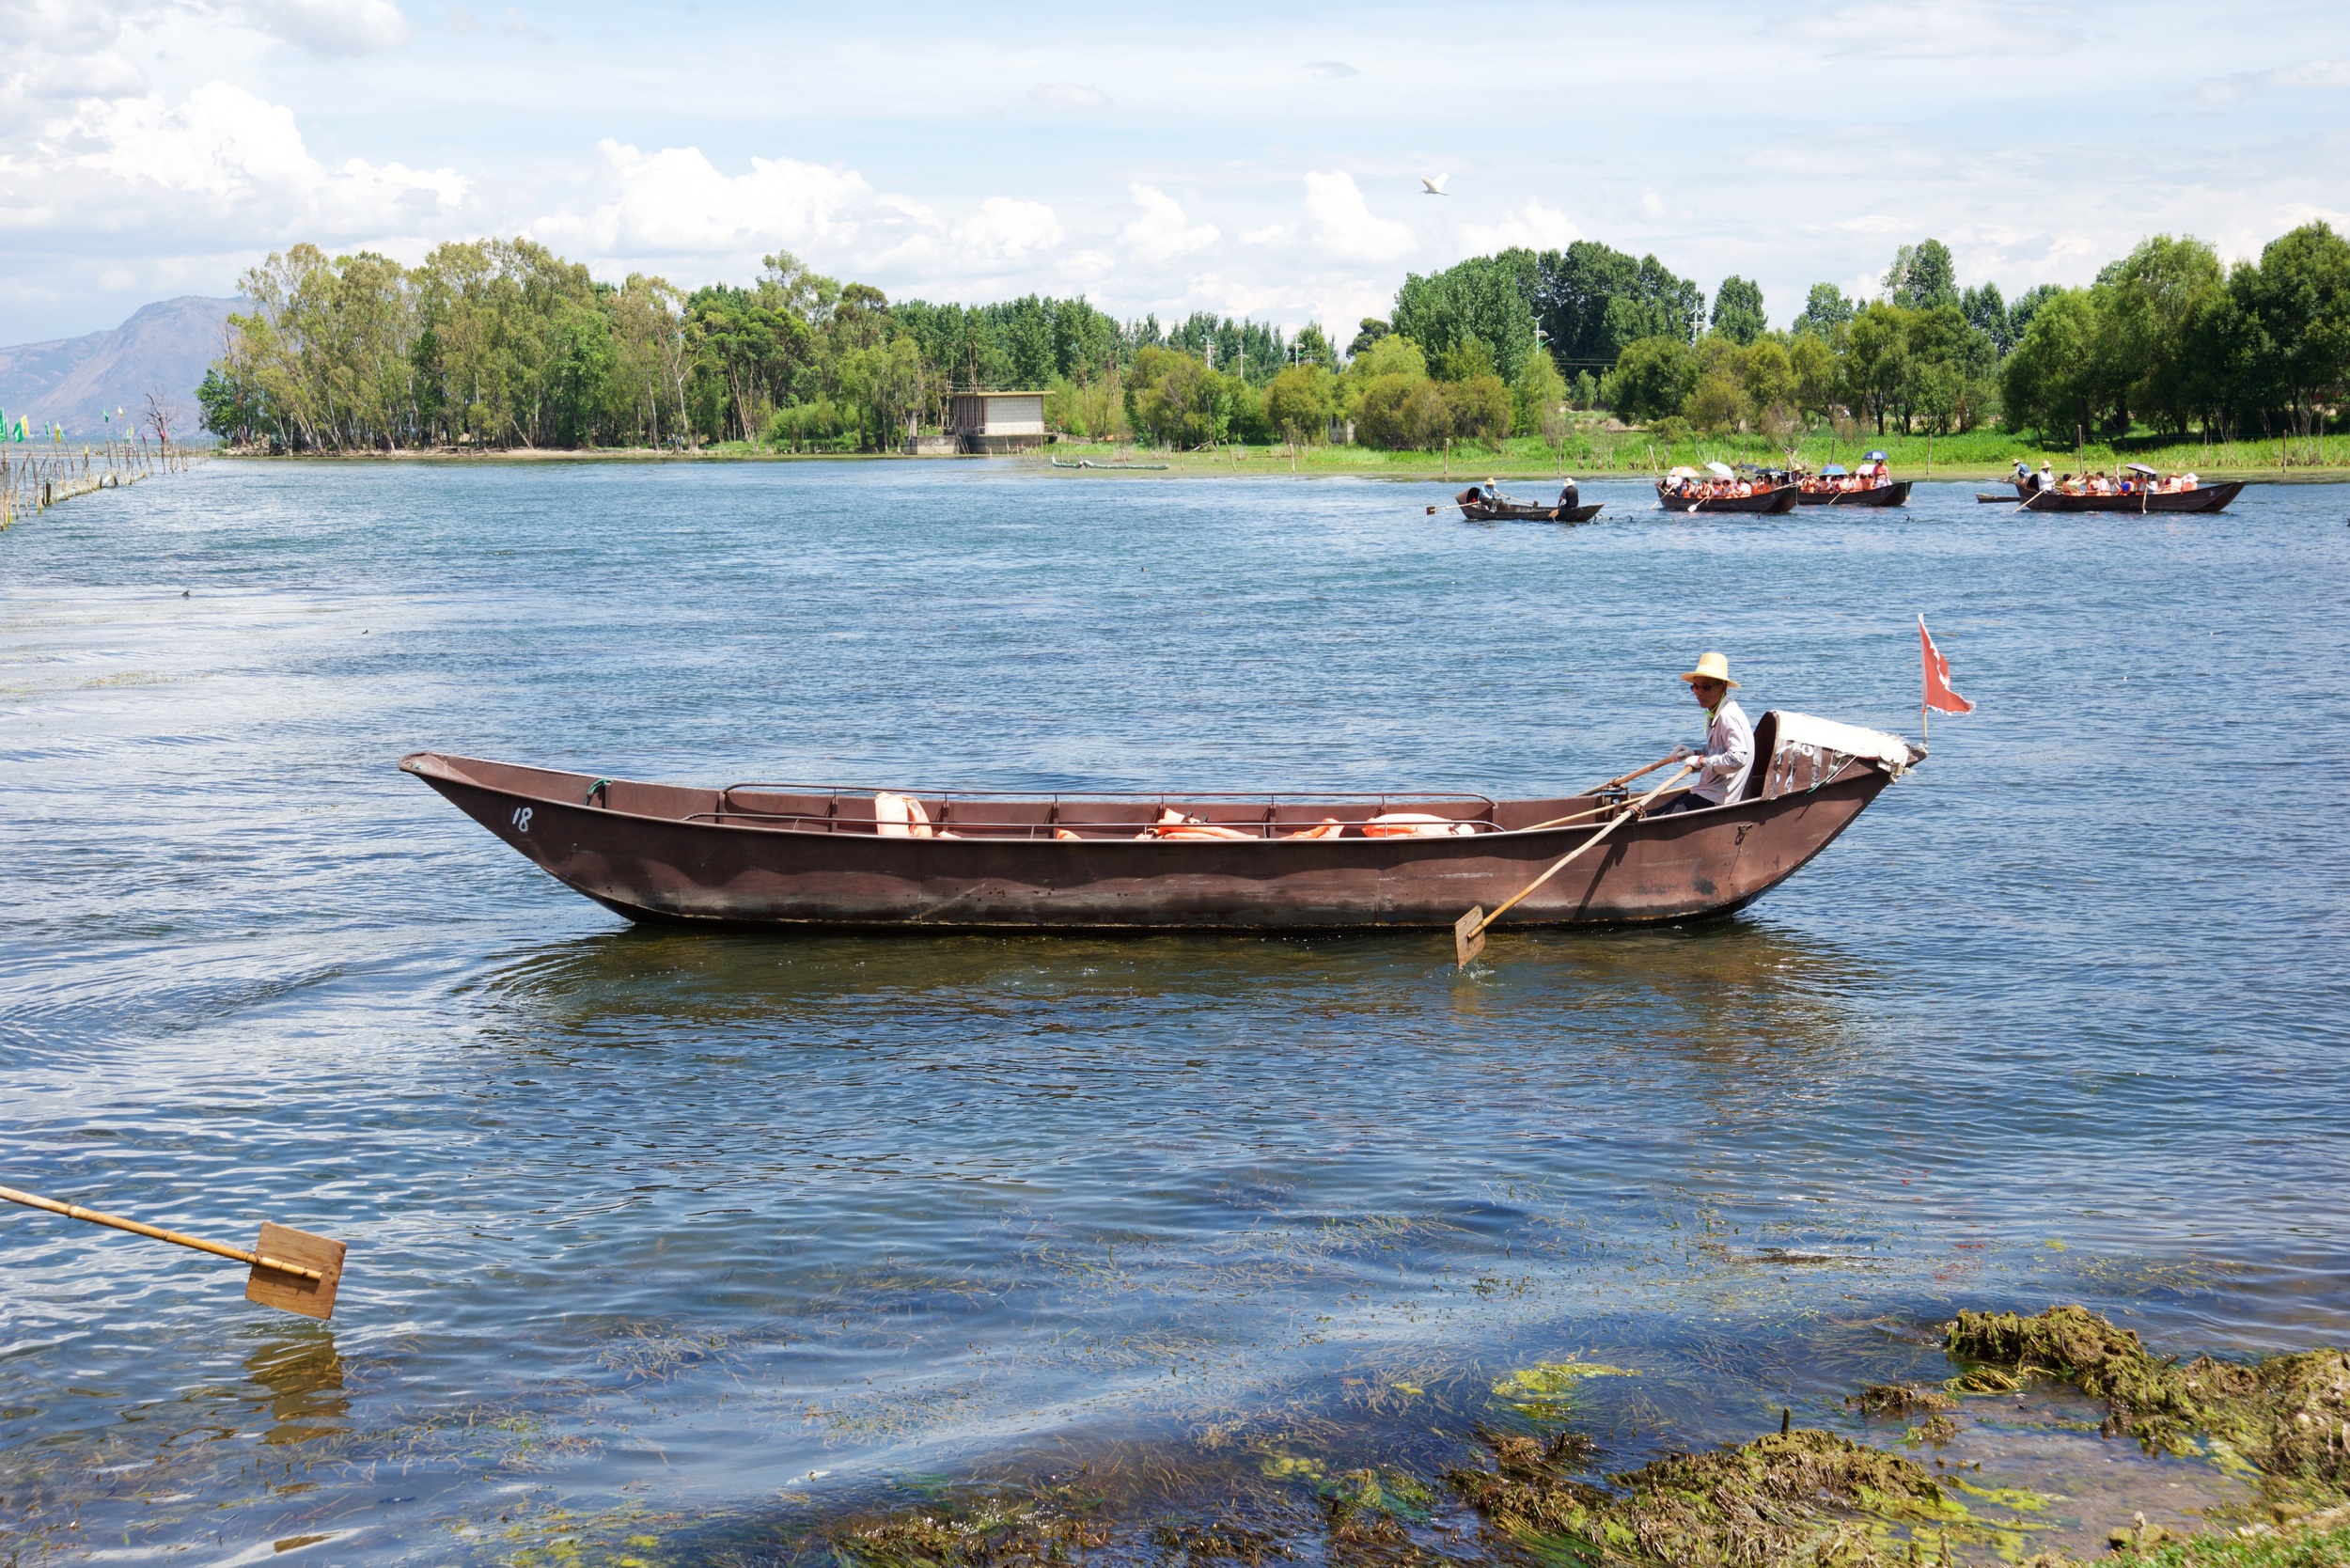  Fishing boat, Bai village, Dali 